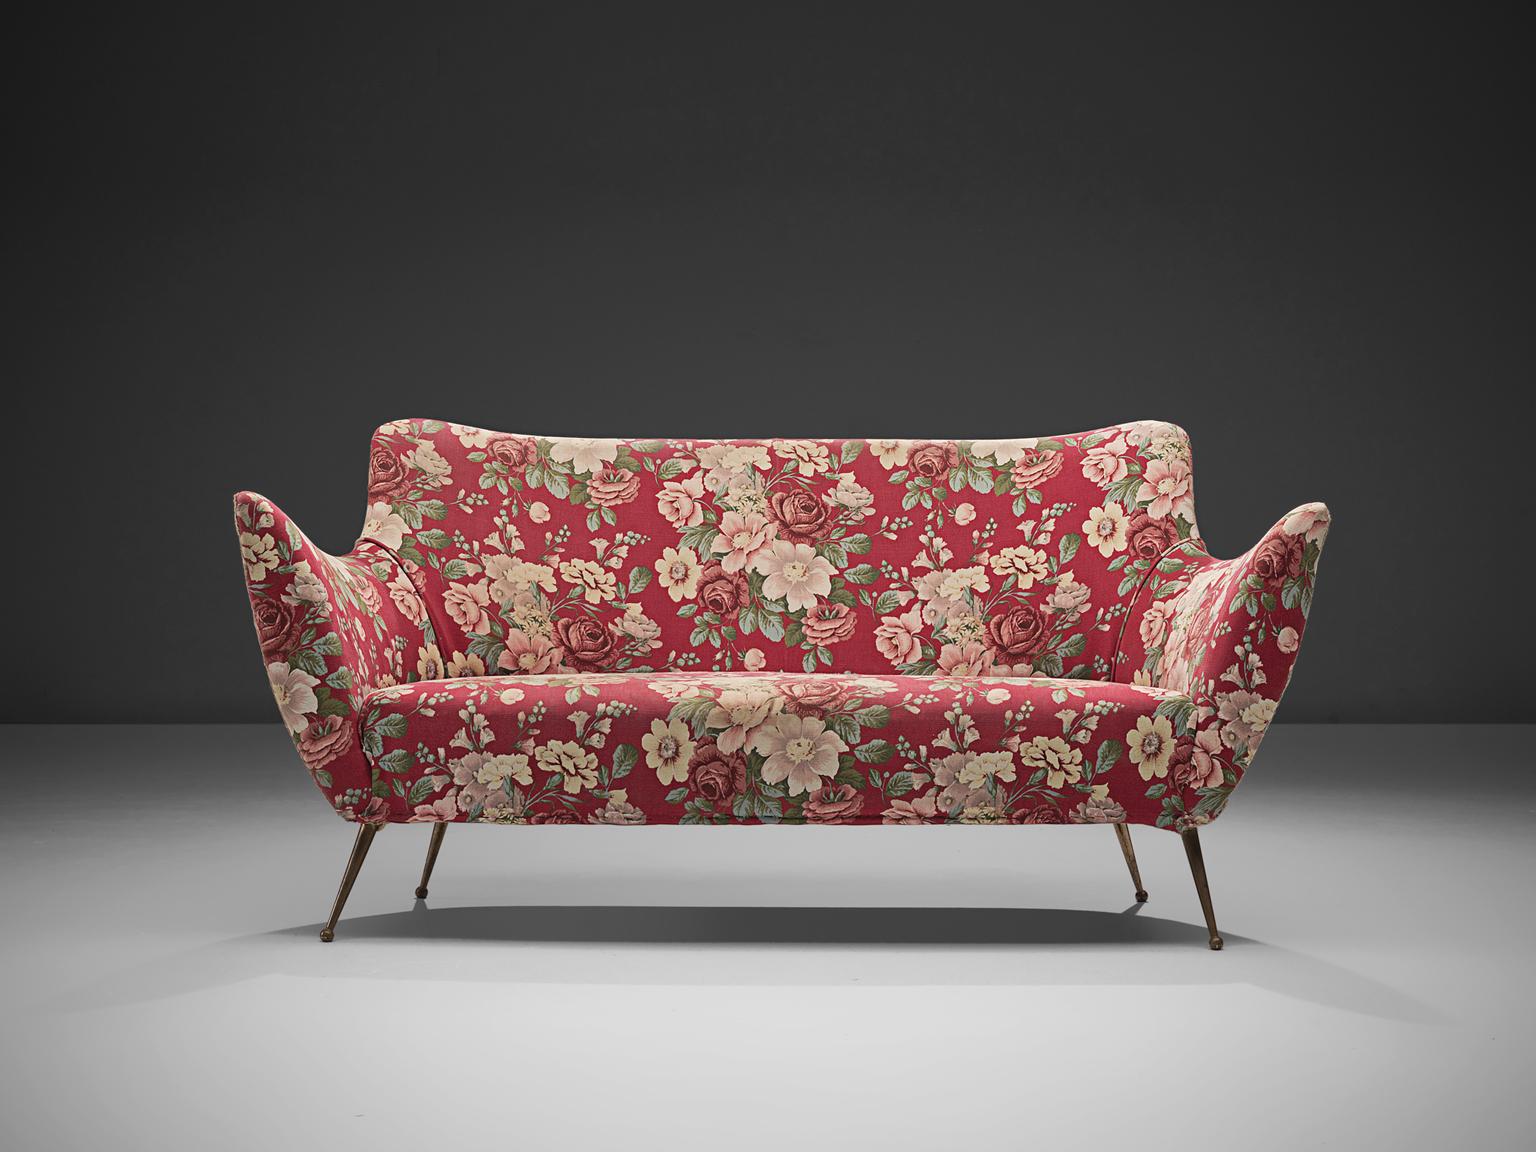 ISA Bergamo, rosa-rot geblümtes italienisches Sofa, Italien, 1950er Jahre.

Dieses Sofa ist eine Ikone des italienischen Designs aus den 1950er Jahren. Dieses organische und skulpturale Zweisitzer-Sofa ist alles andere als minimalistisch.